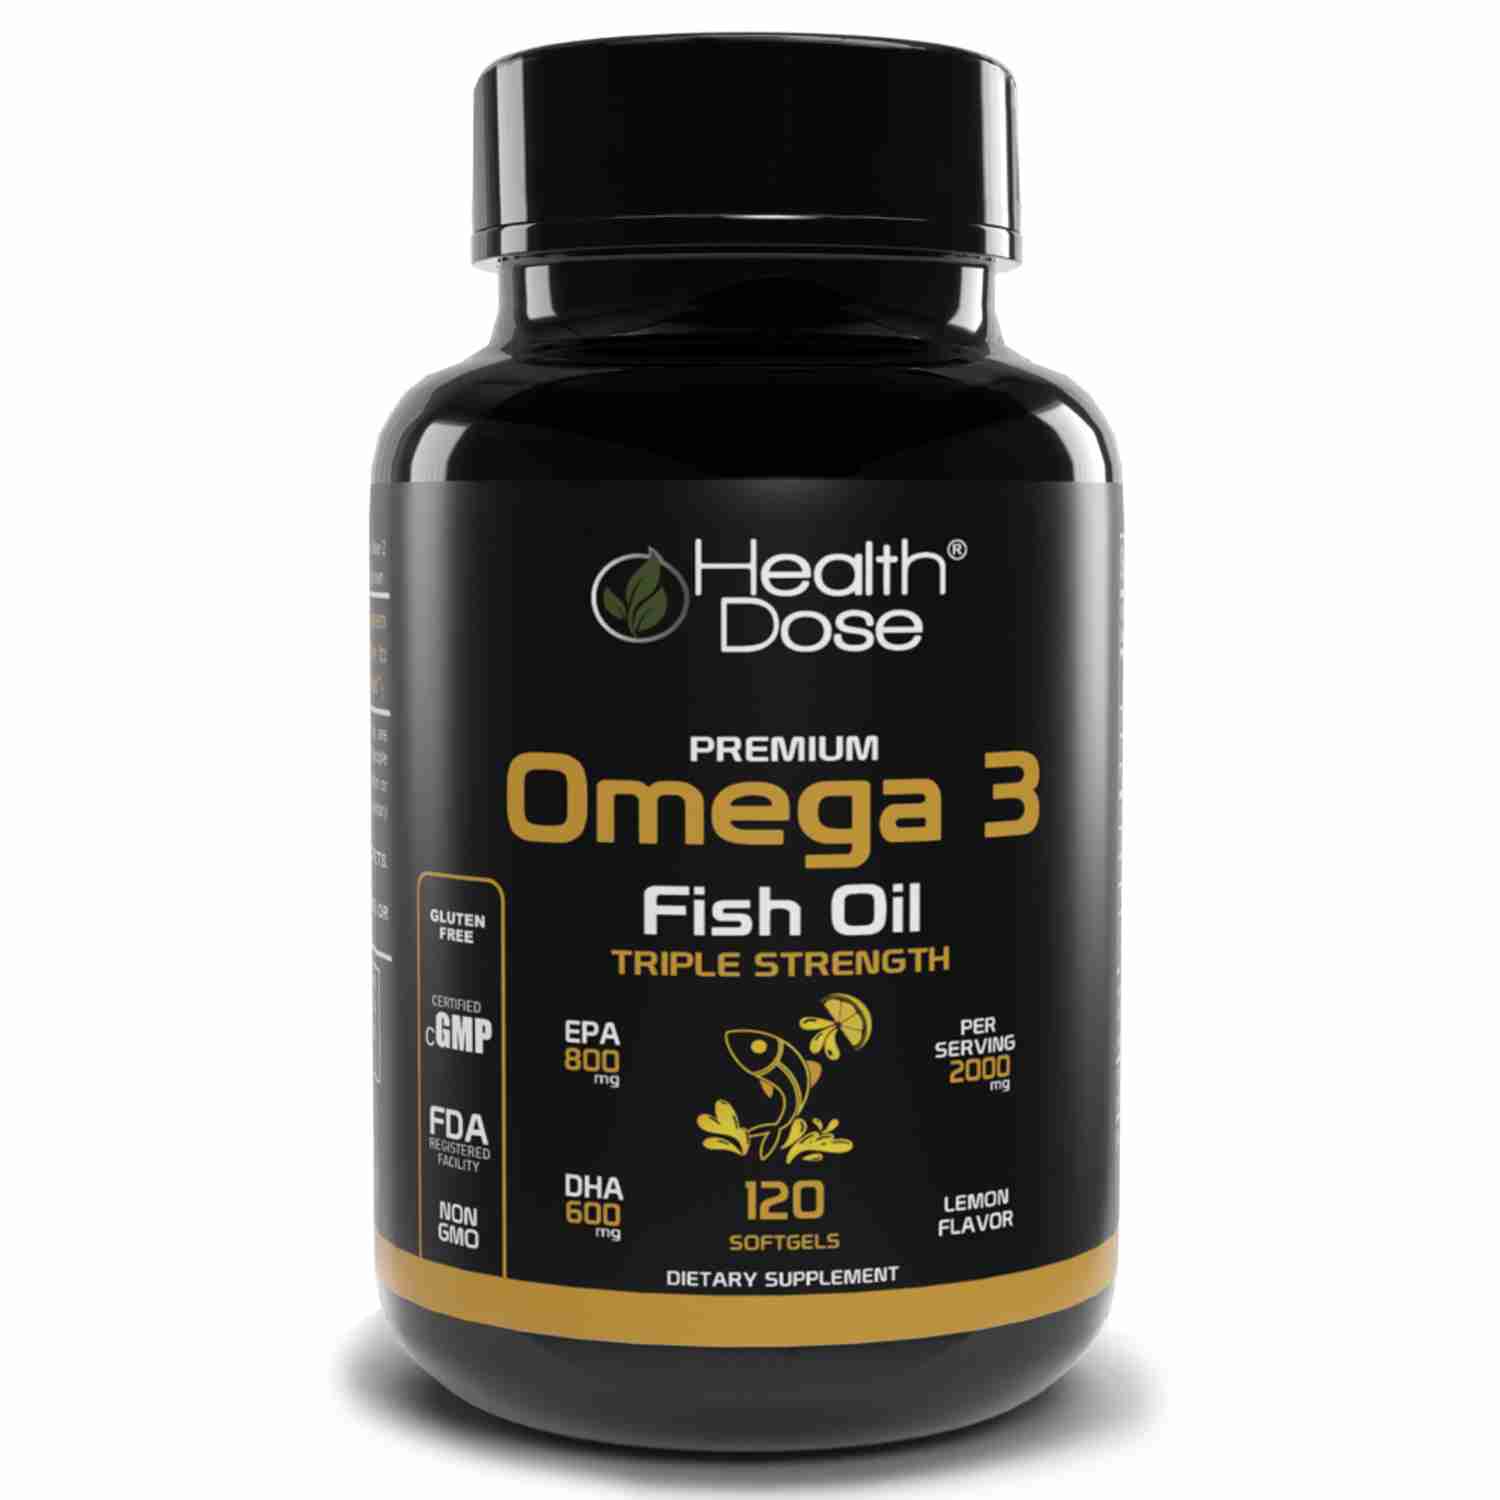 omega3 with cash back rebate